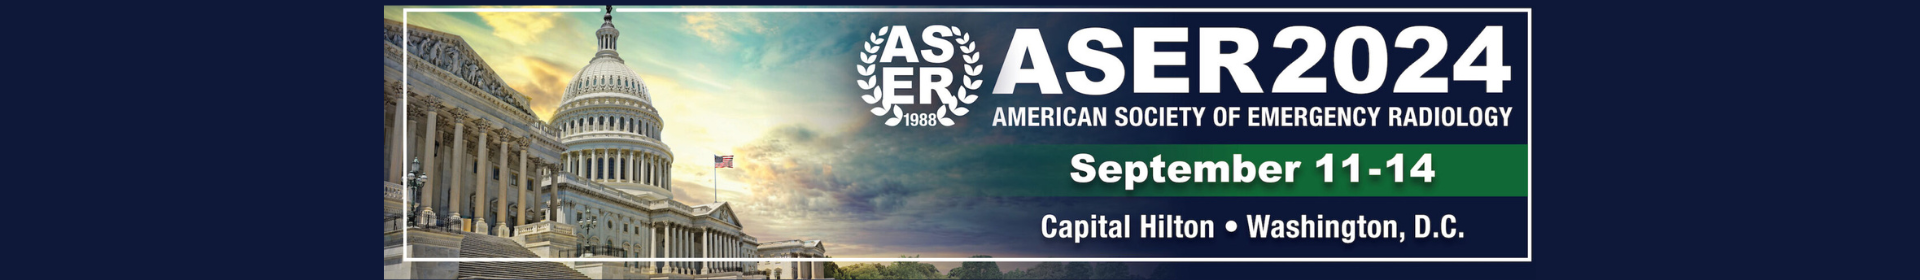 ASER 2024 Event Banner